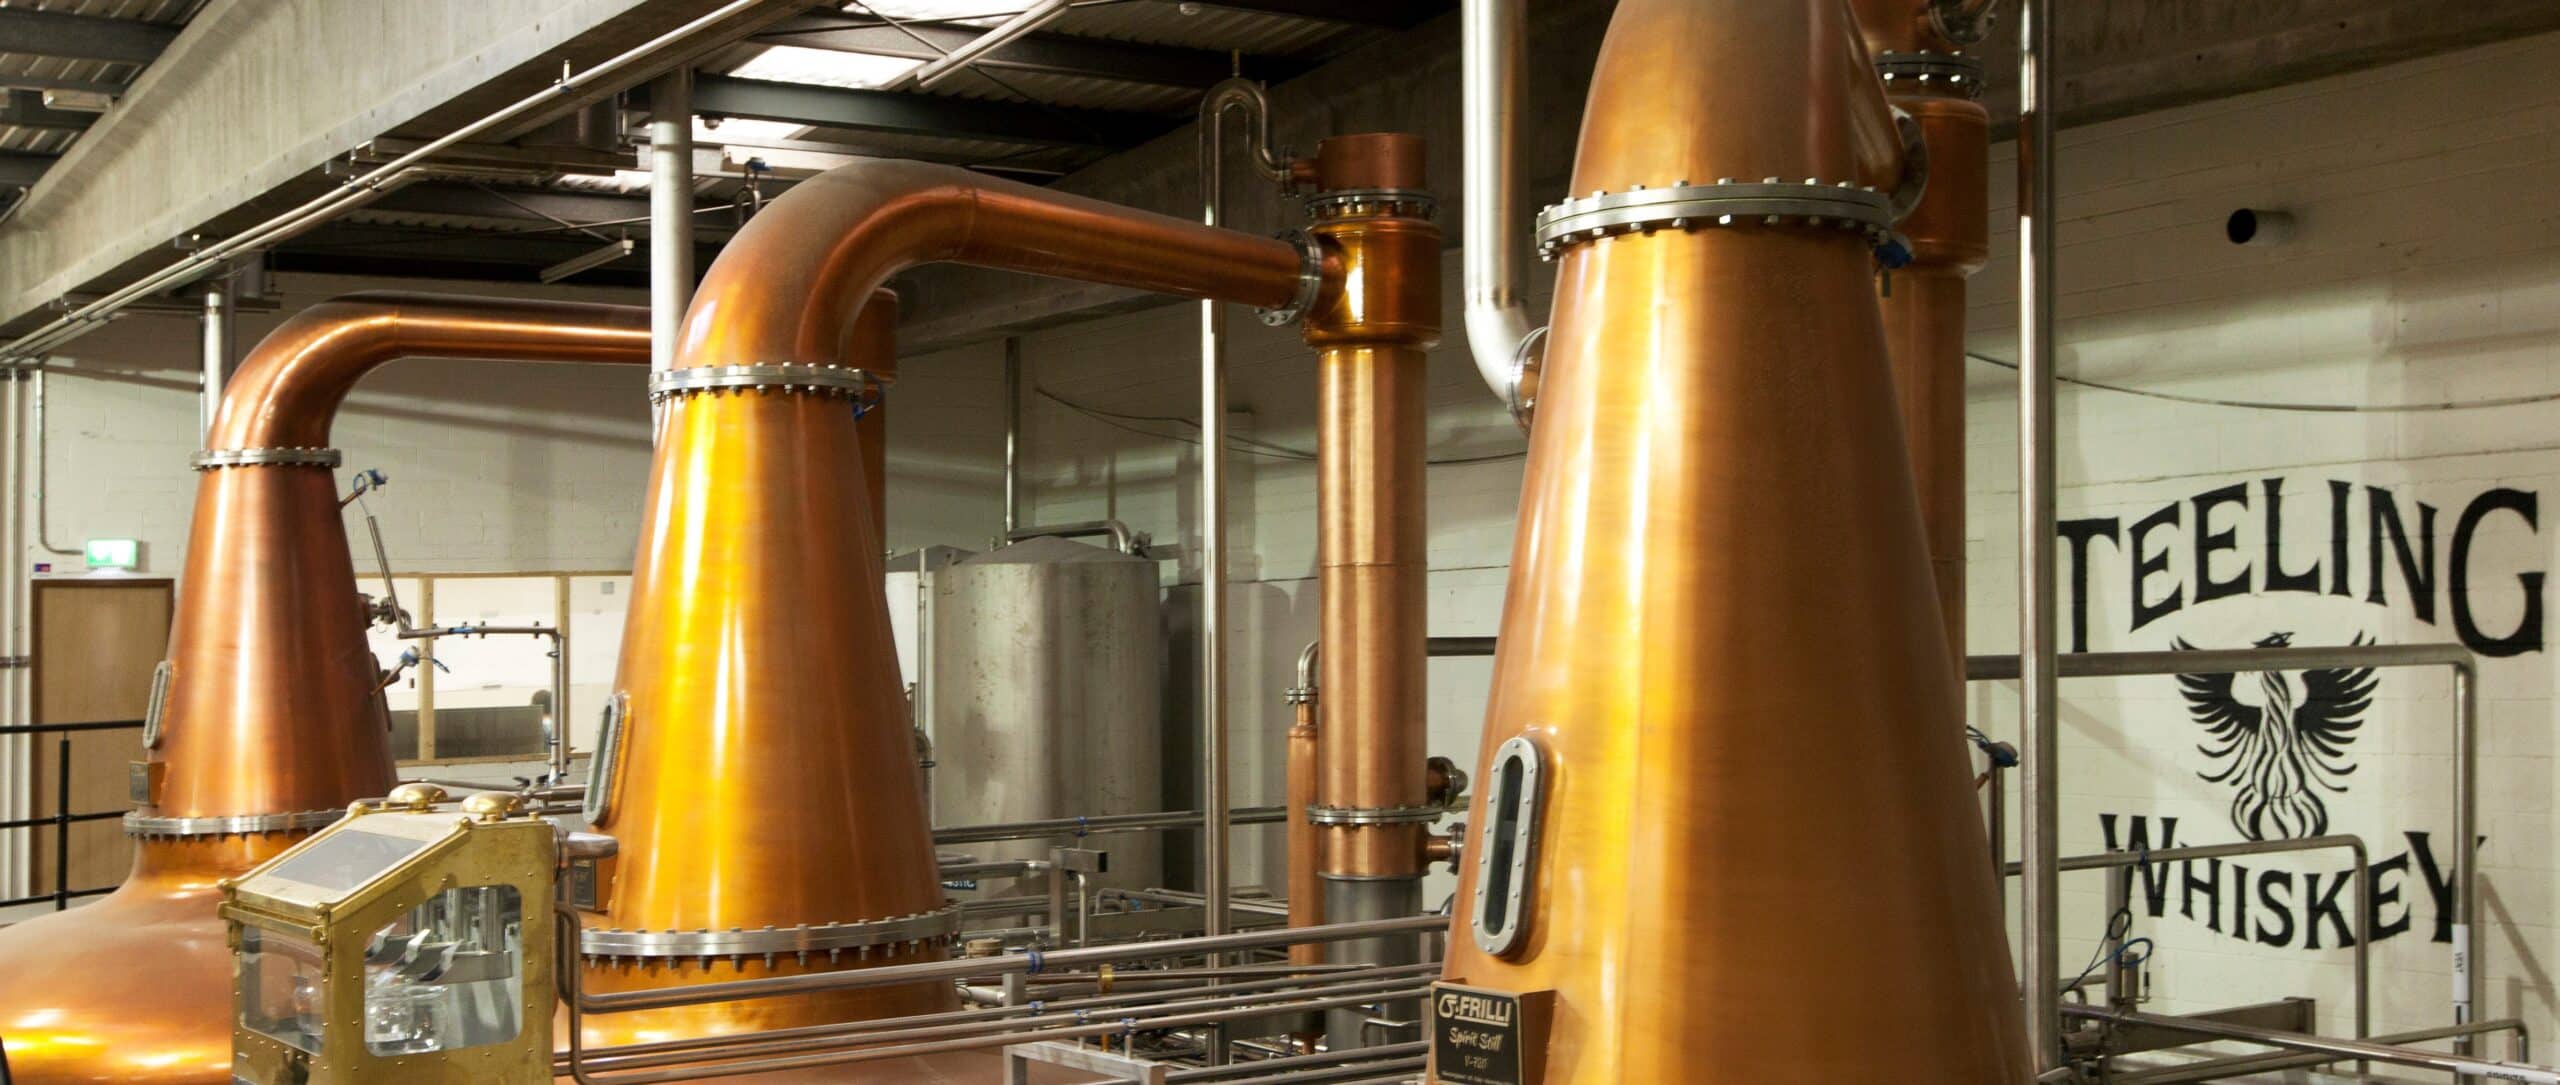 Teeling Whiskey Distillery Pot Stills